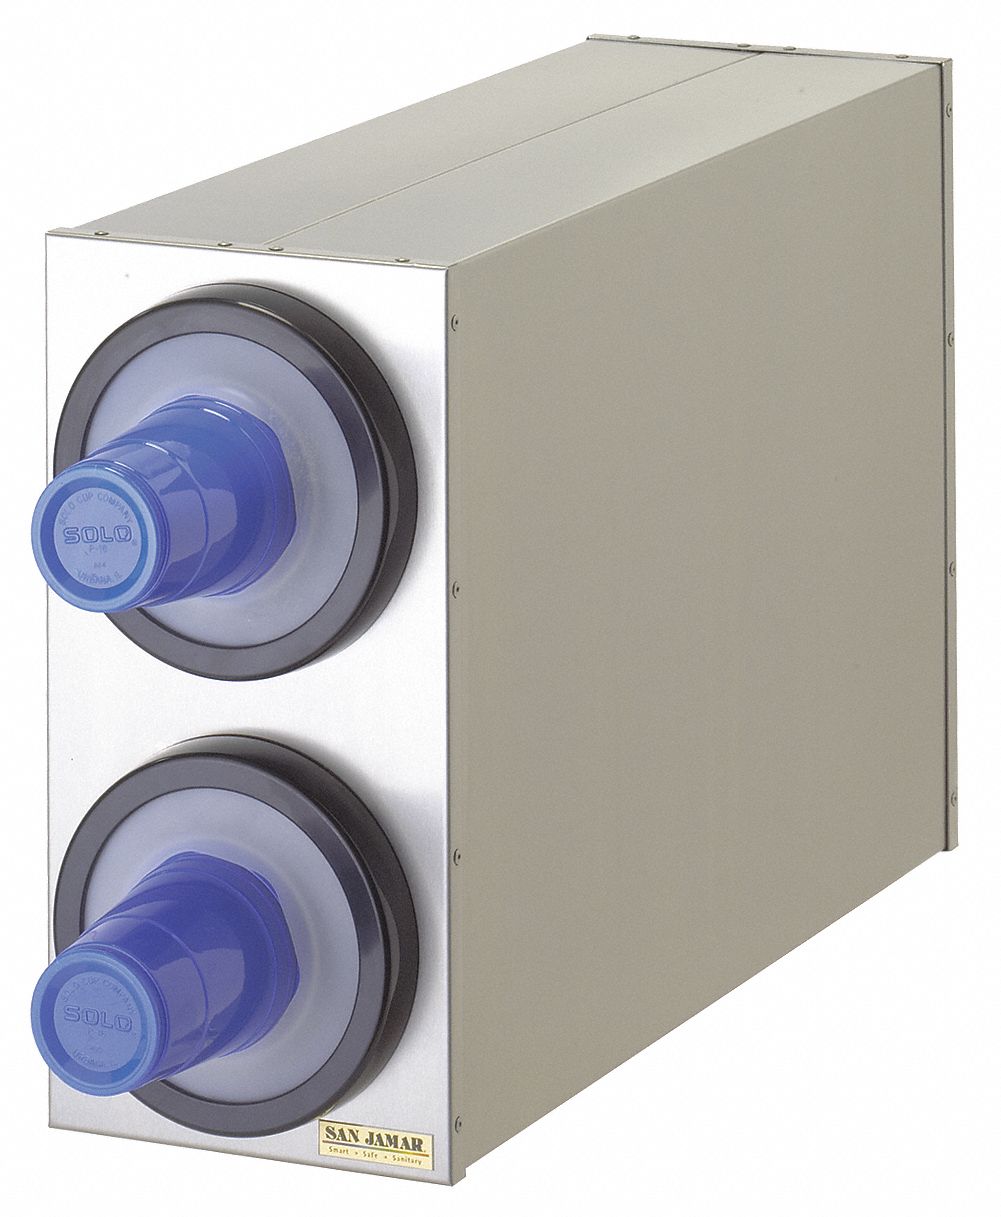 6ADL0 - 2 Cup Dispenser System